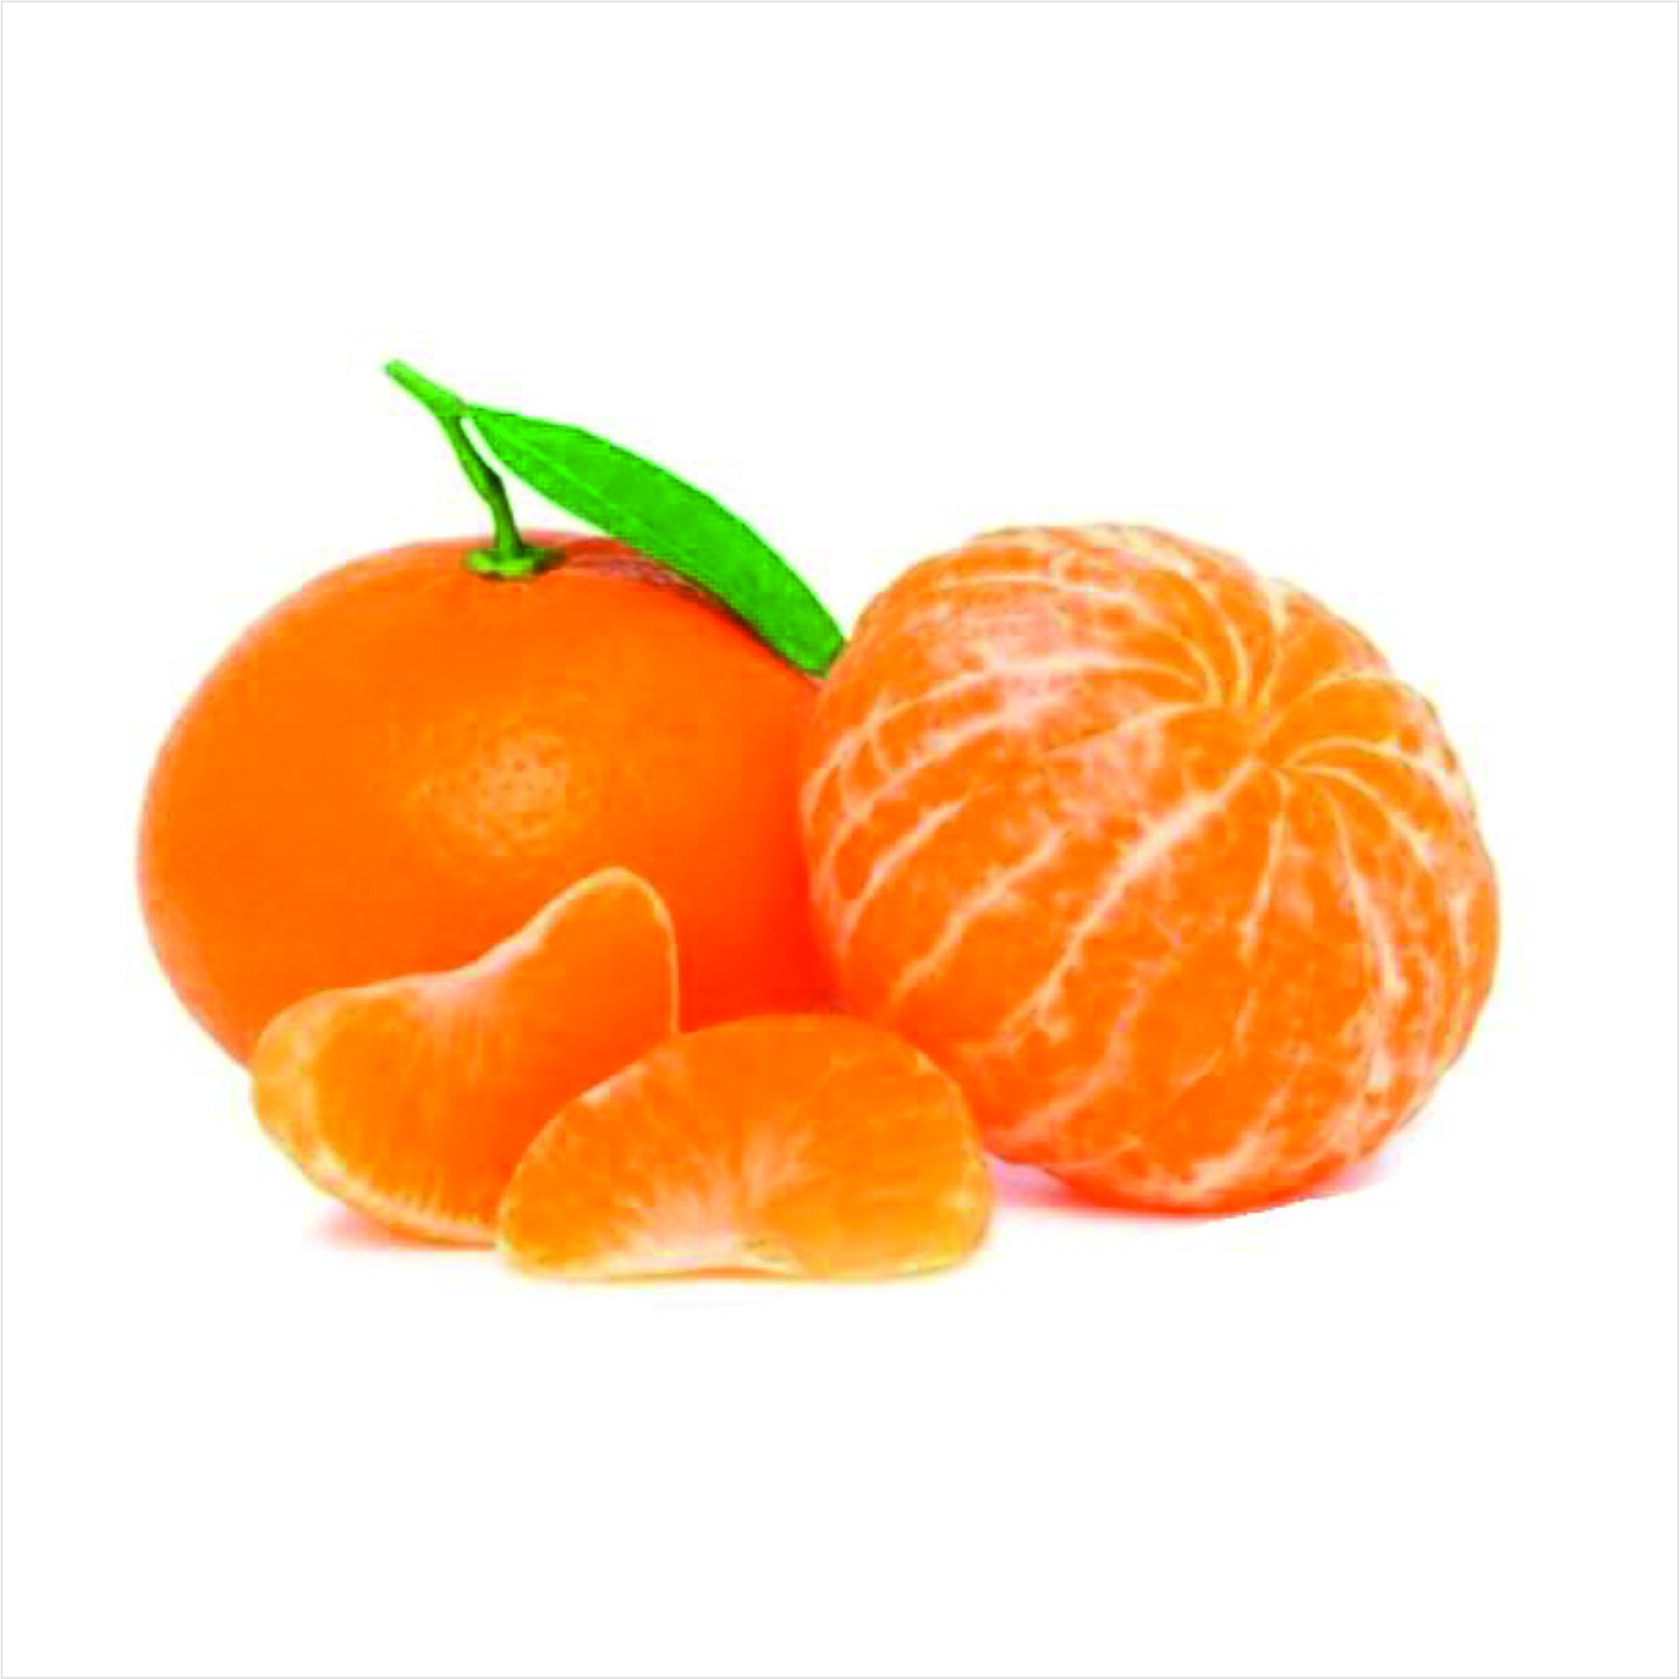 21 мандарин. Мандарин ПОНКАН. Танжерин фрукт. Цитрус мандарин 1. Мандарины Jaffa.